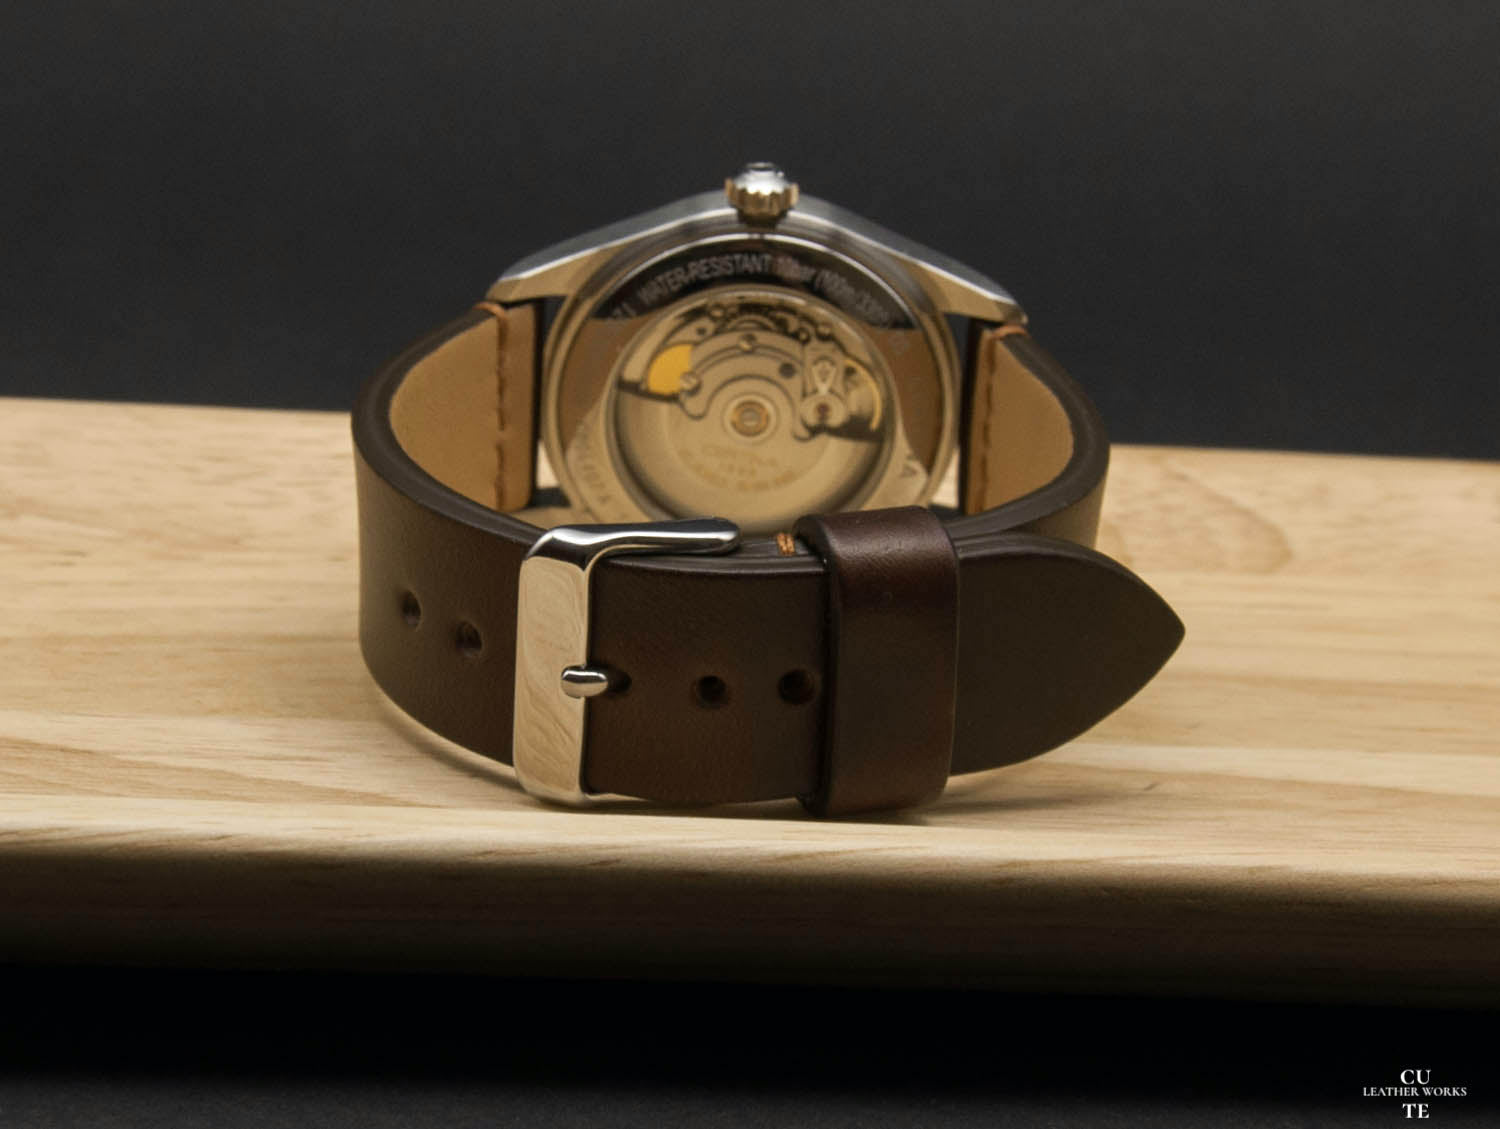 Horween Chromexcel Dark Brown Leather Watch Strap, Horizontal Stitching